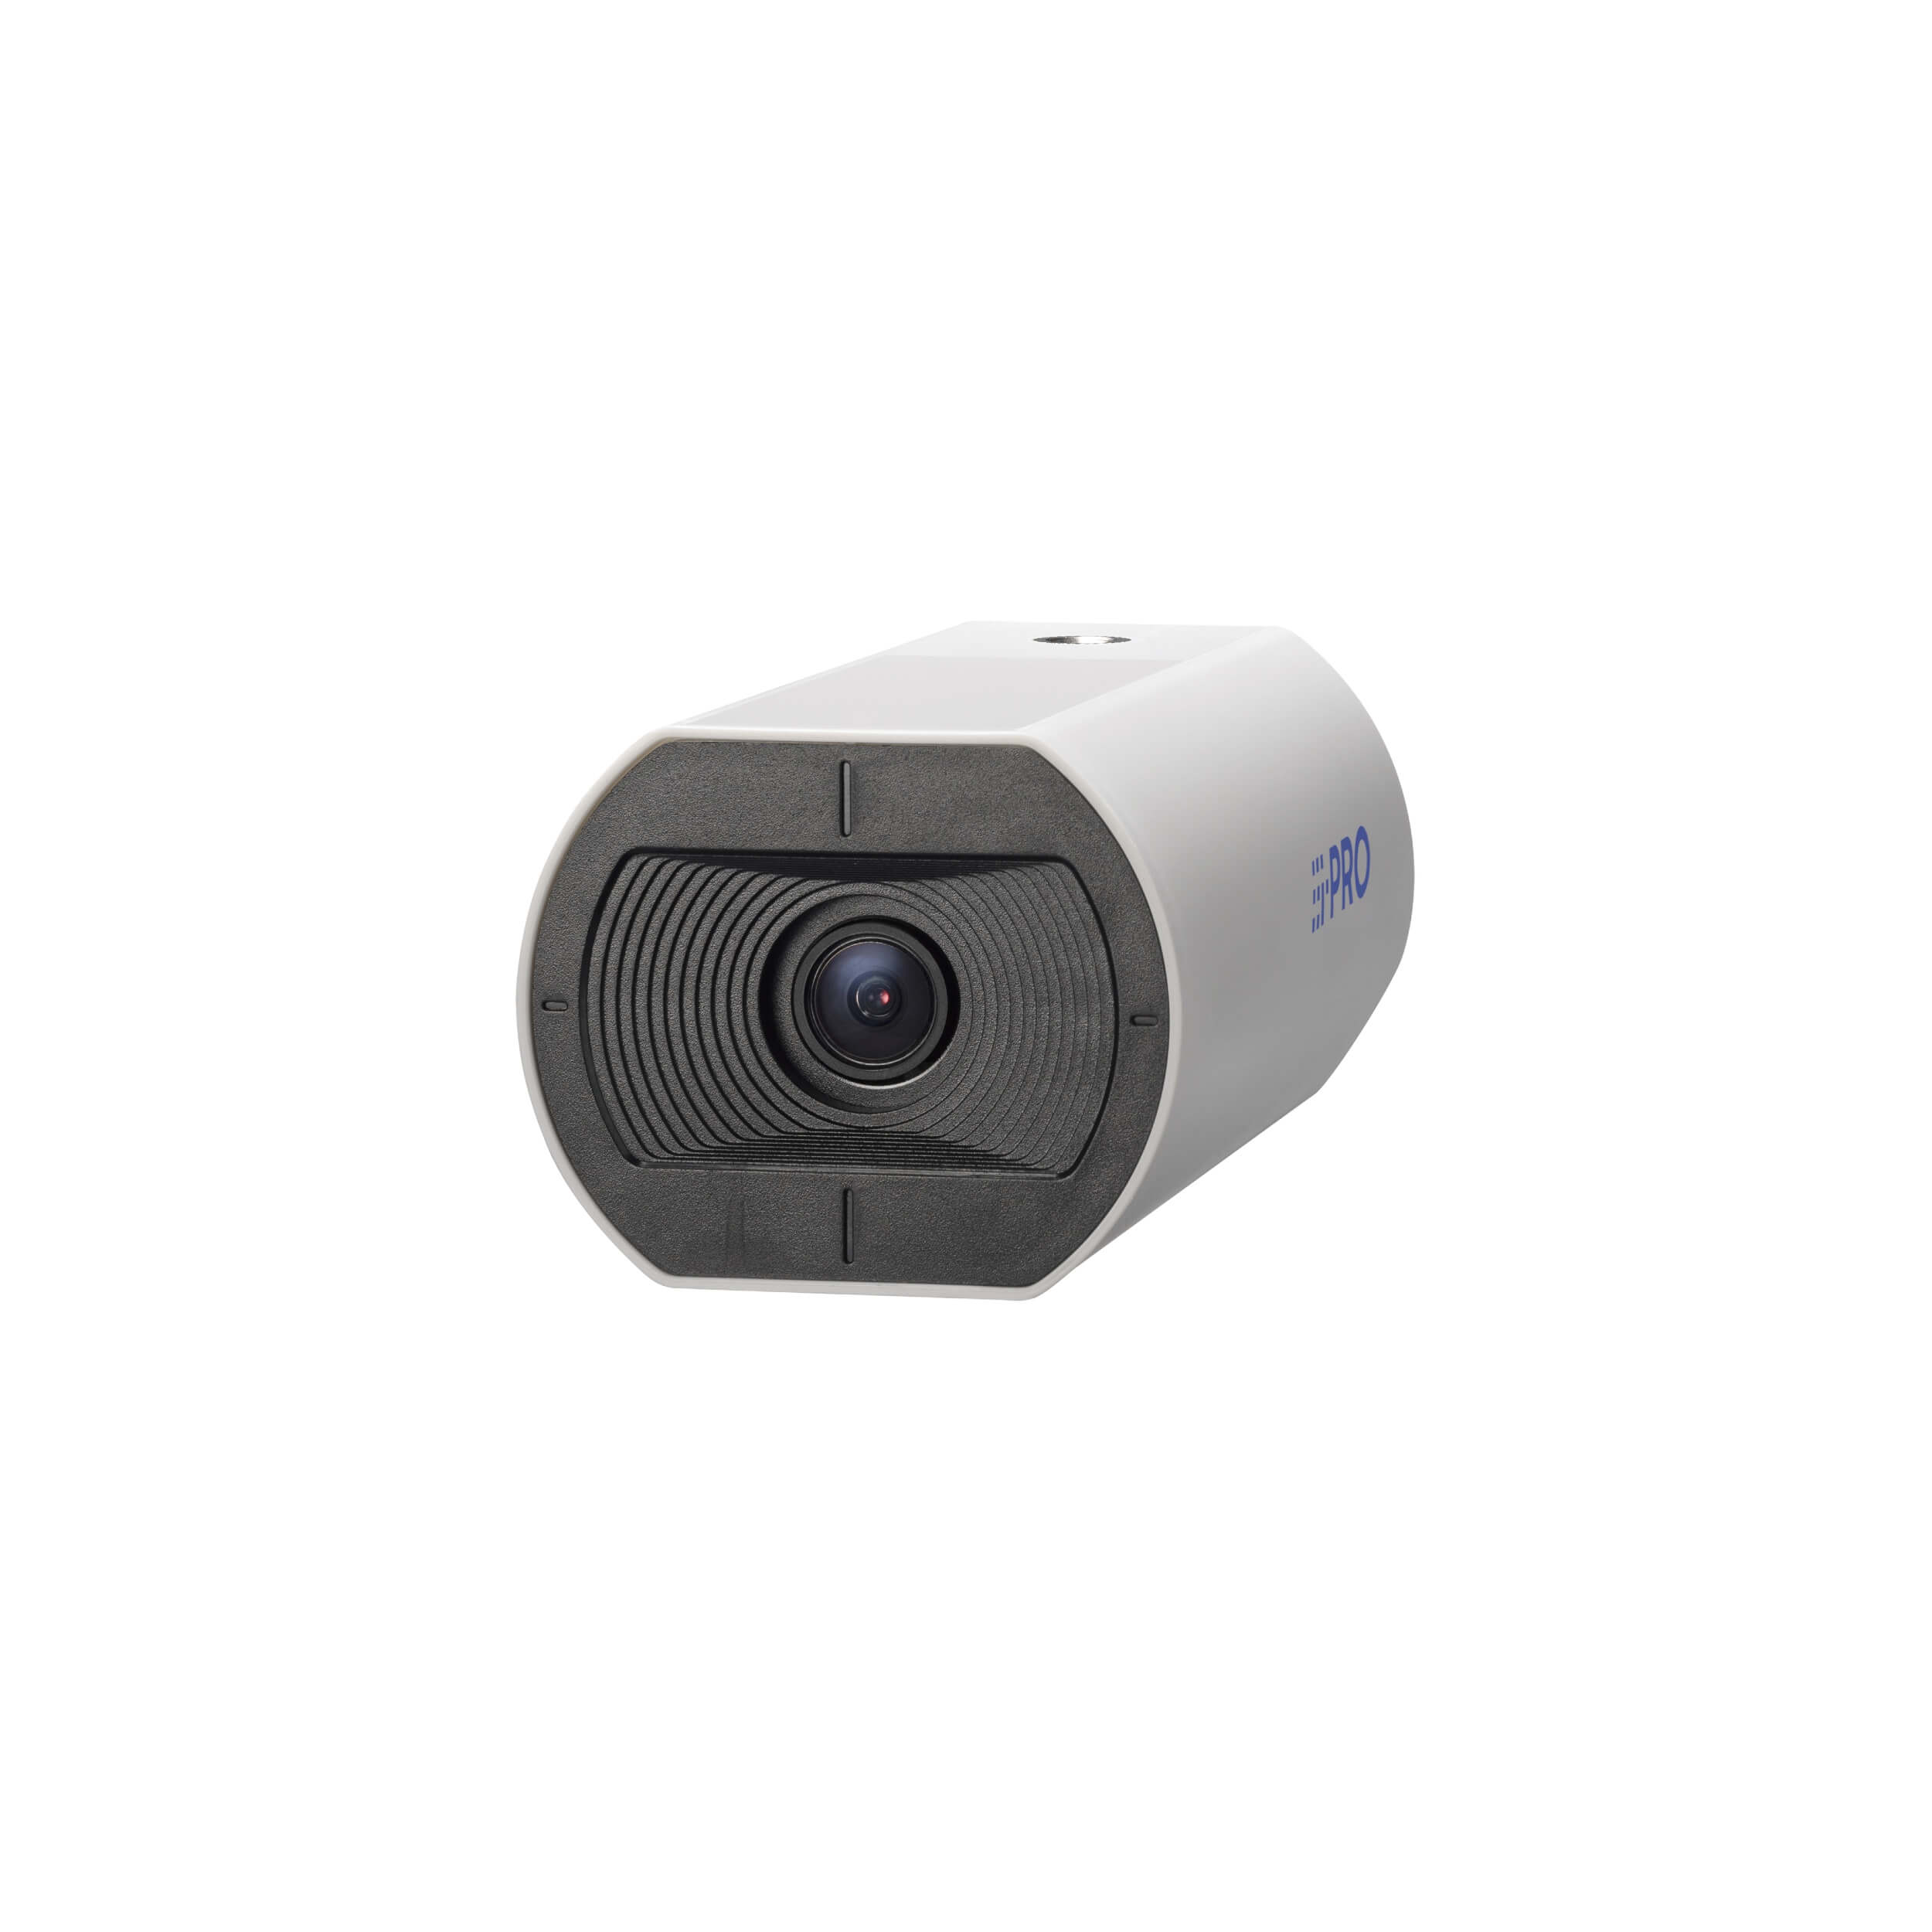 i-PRO WV-U1132A 2 Megapixel Network Indoor Box Camera with 2.9mm Lens